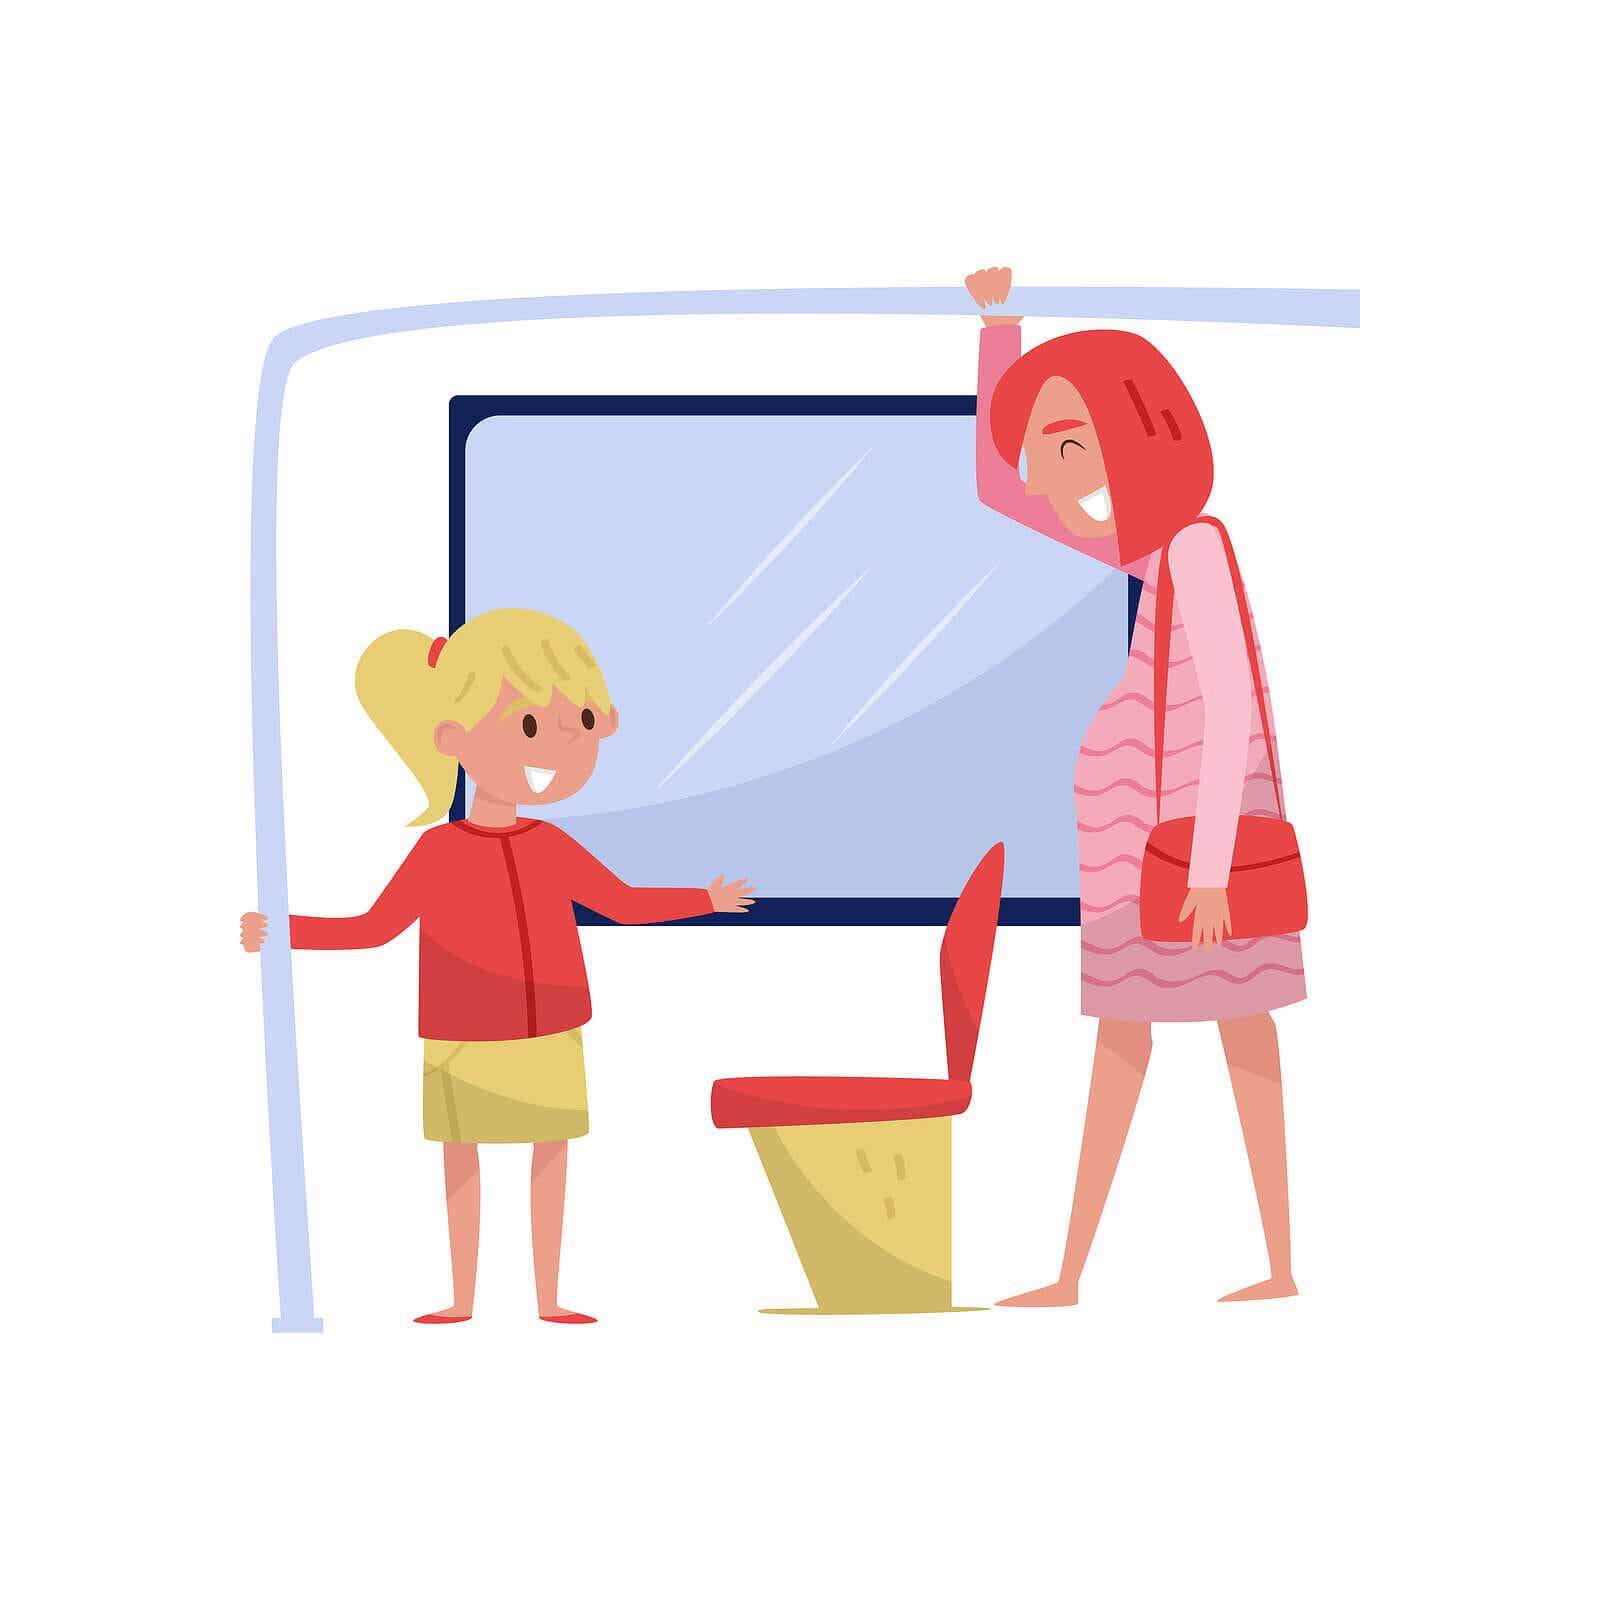 Een cartoonafbeelding van een klein meisje dat haar zitplaats geeft aan een zwangere vrouw in de bus.